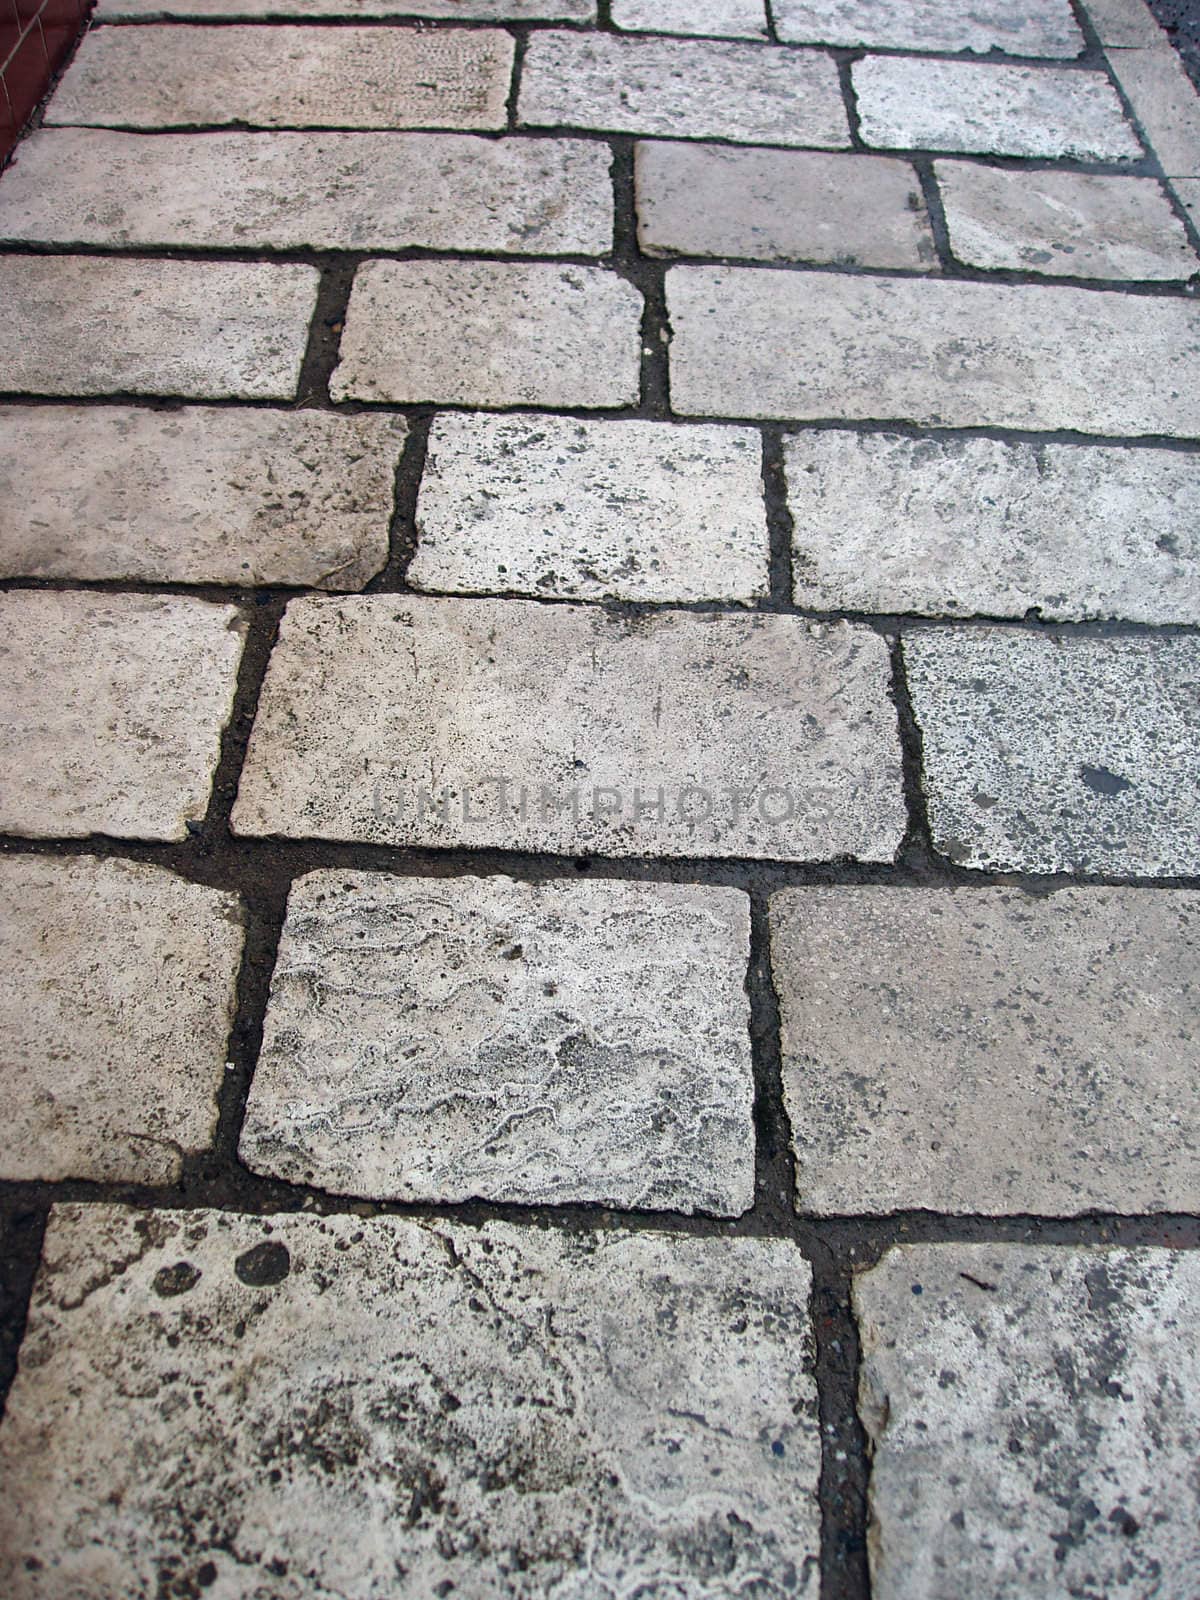 Stone tiles on walkway